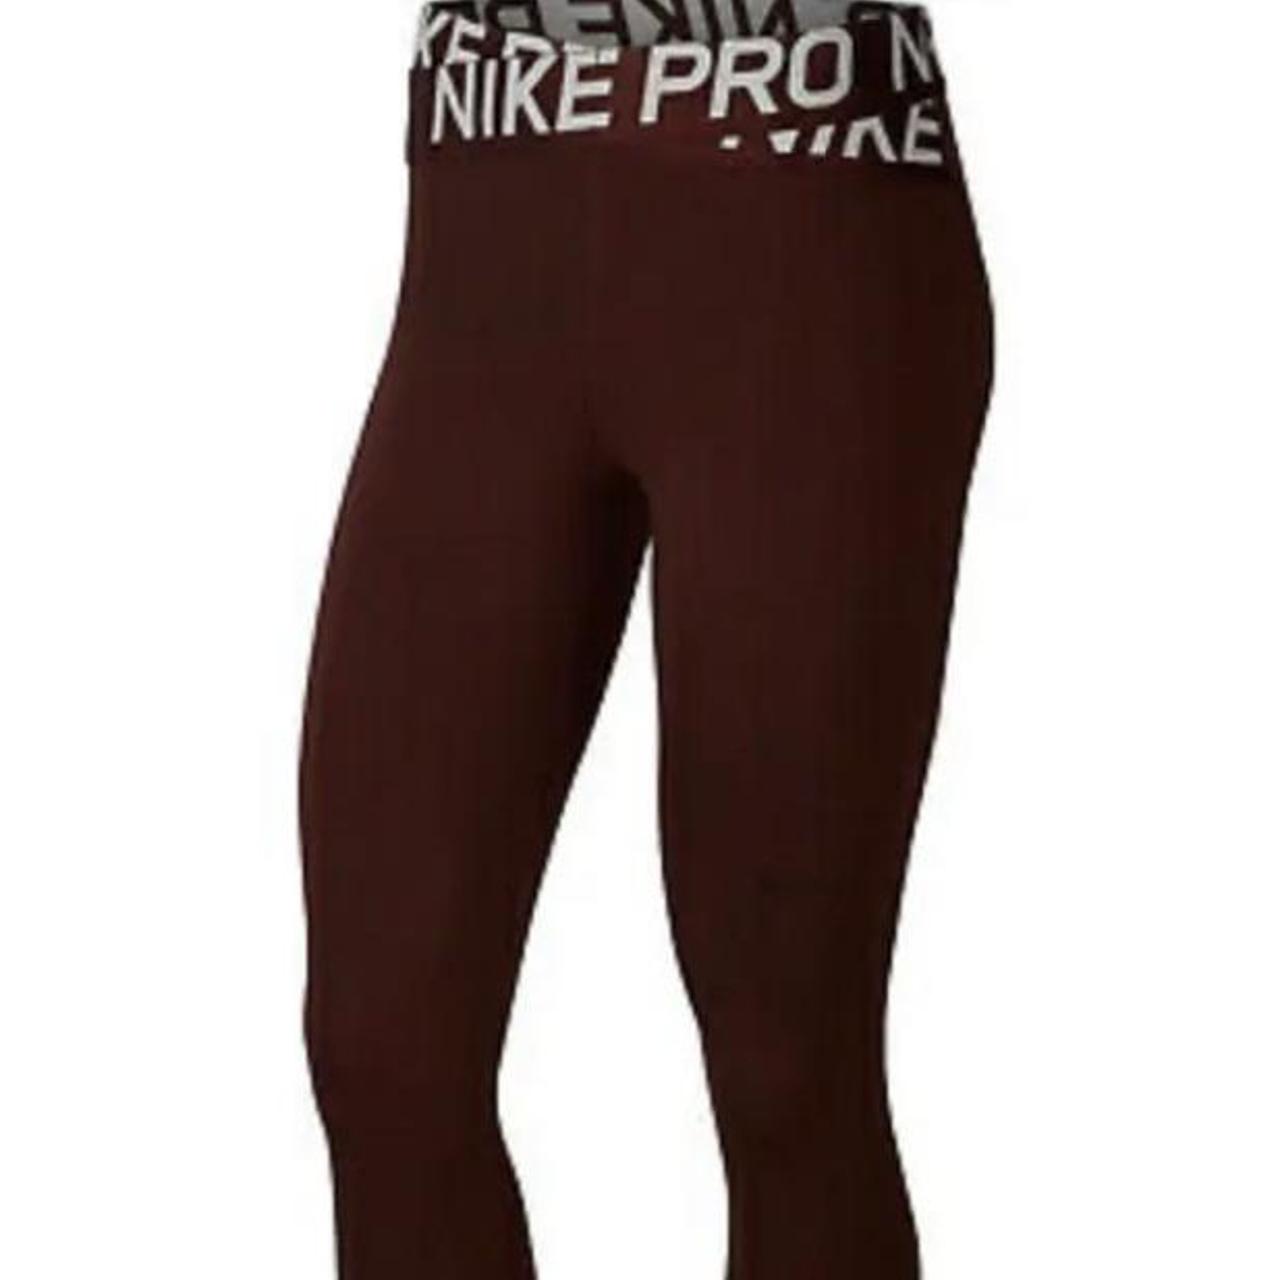 Brand New Nike Pro Intertwist Leggings, -no wear